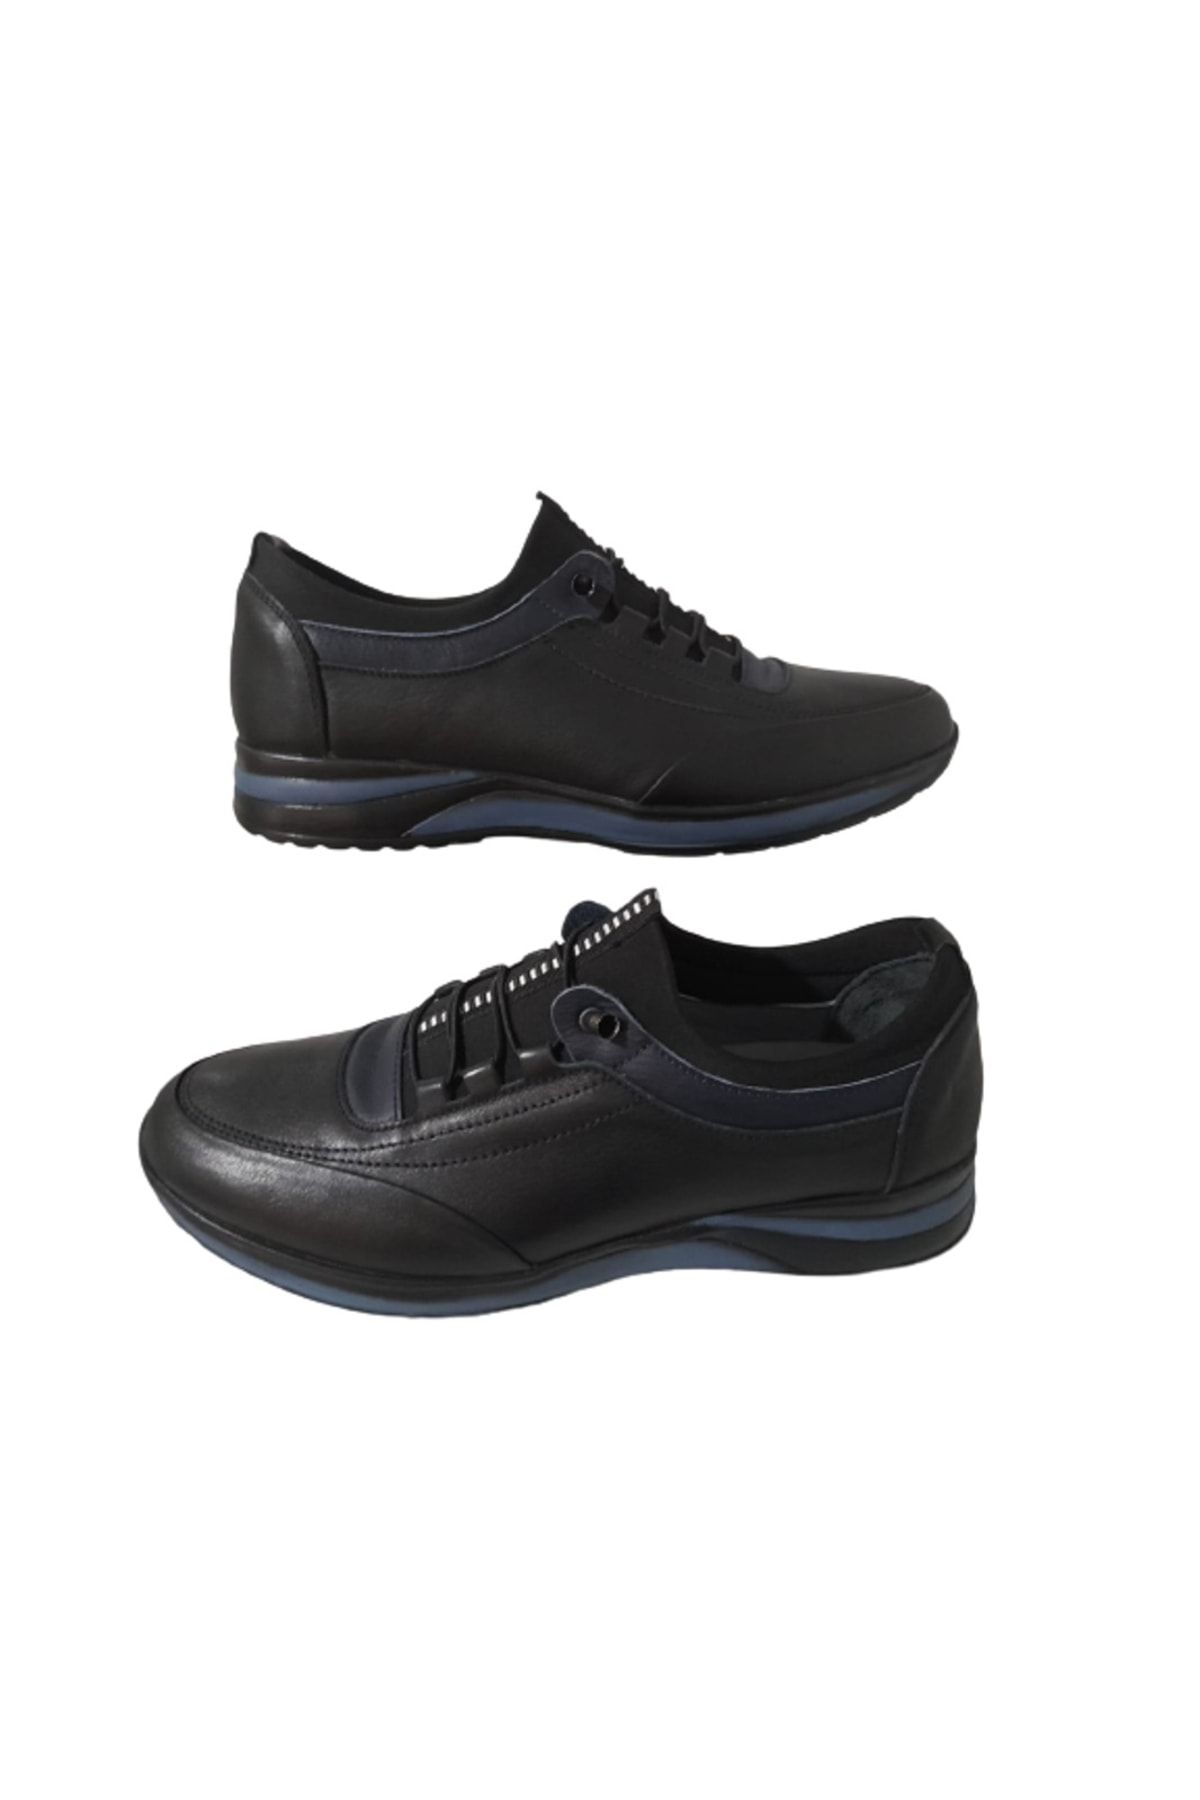 Bemsa A78-46 Erkek Hakiki Deri Siyah-mavi Klasik Şık Lastikli Ayakkabı